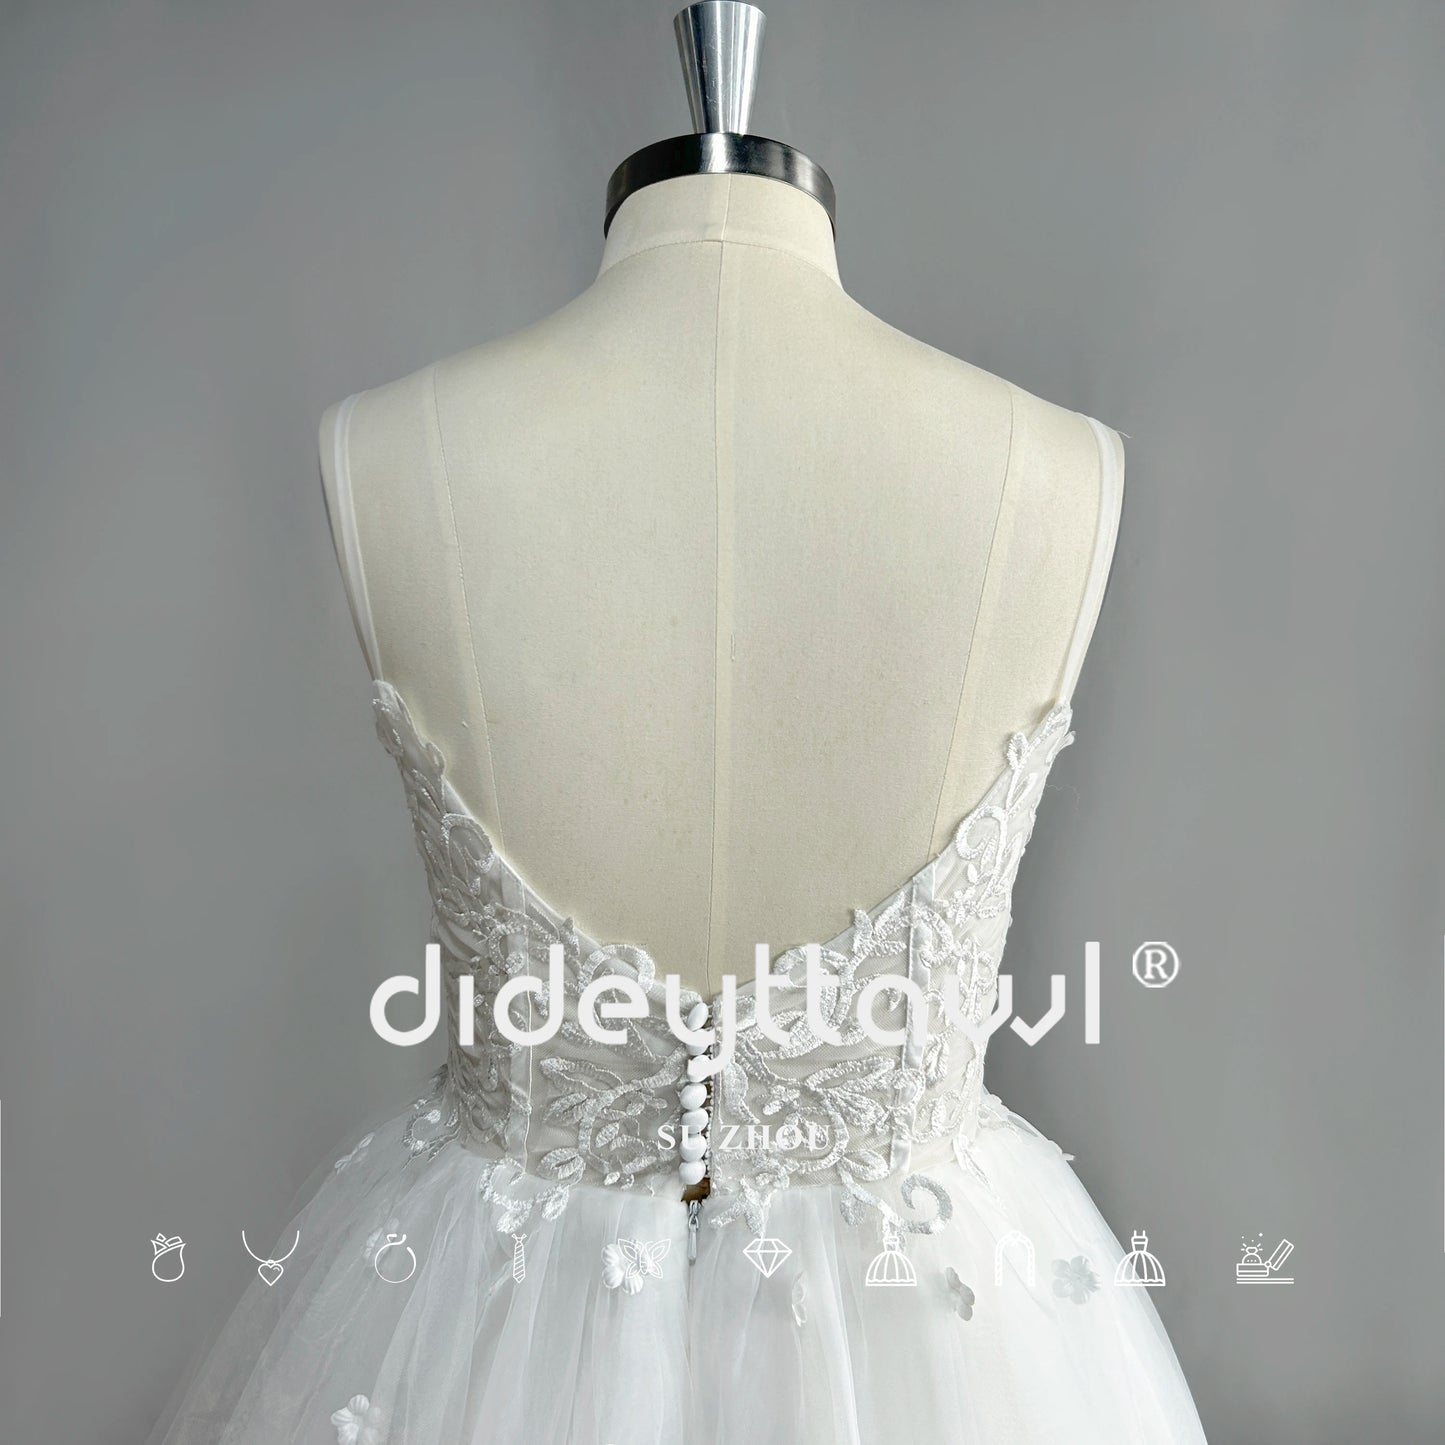 Dideyttawl sayang lengan panjang tulle gaun pengantin pendek mini panjang dari bahu gaun pengantin gambar nyata